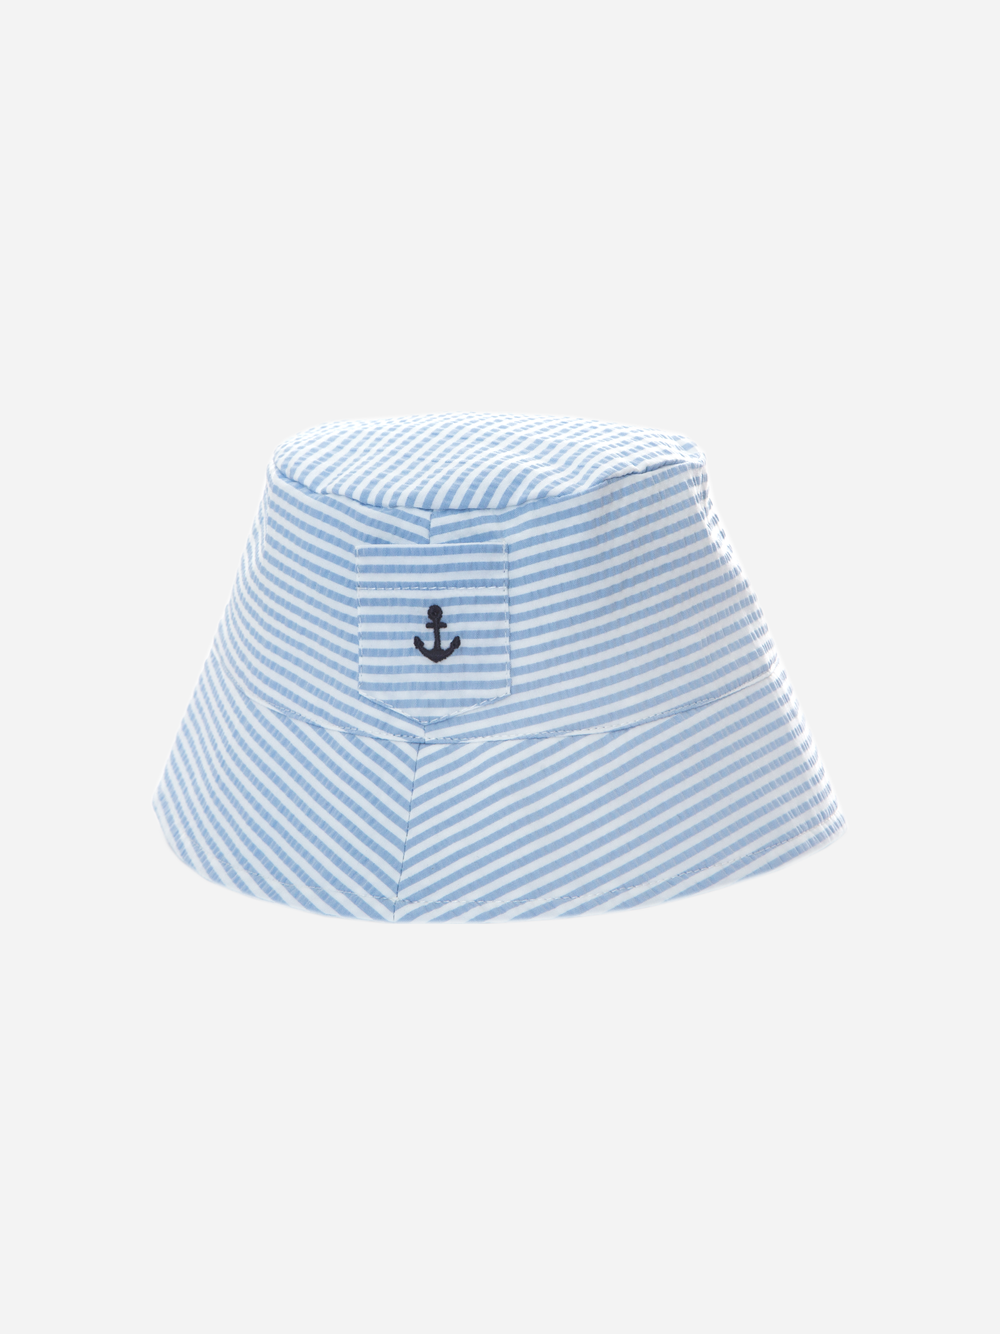 Chapéu de riscas brancas e azuis bordadas